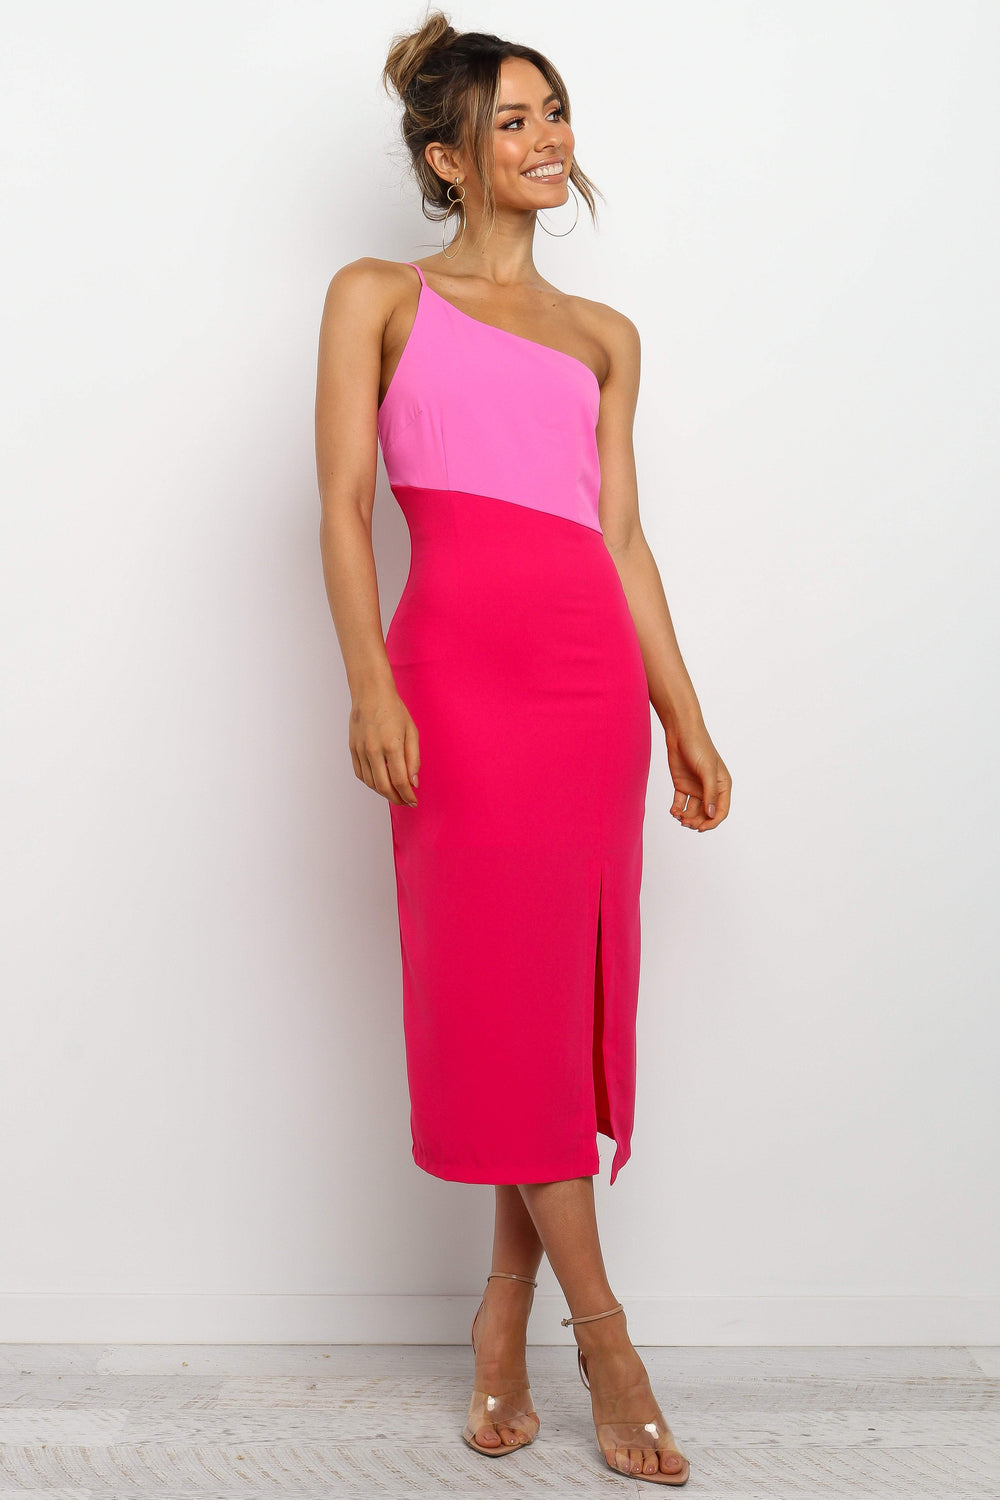 Xiomar Dress - Pink - Petal ☀ Pup USA